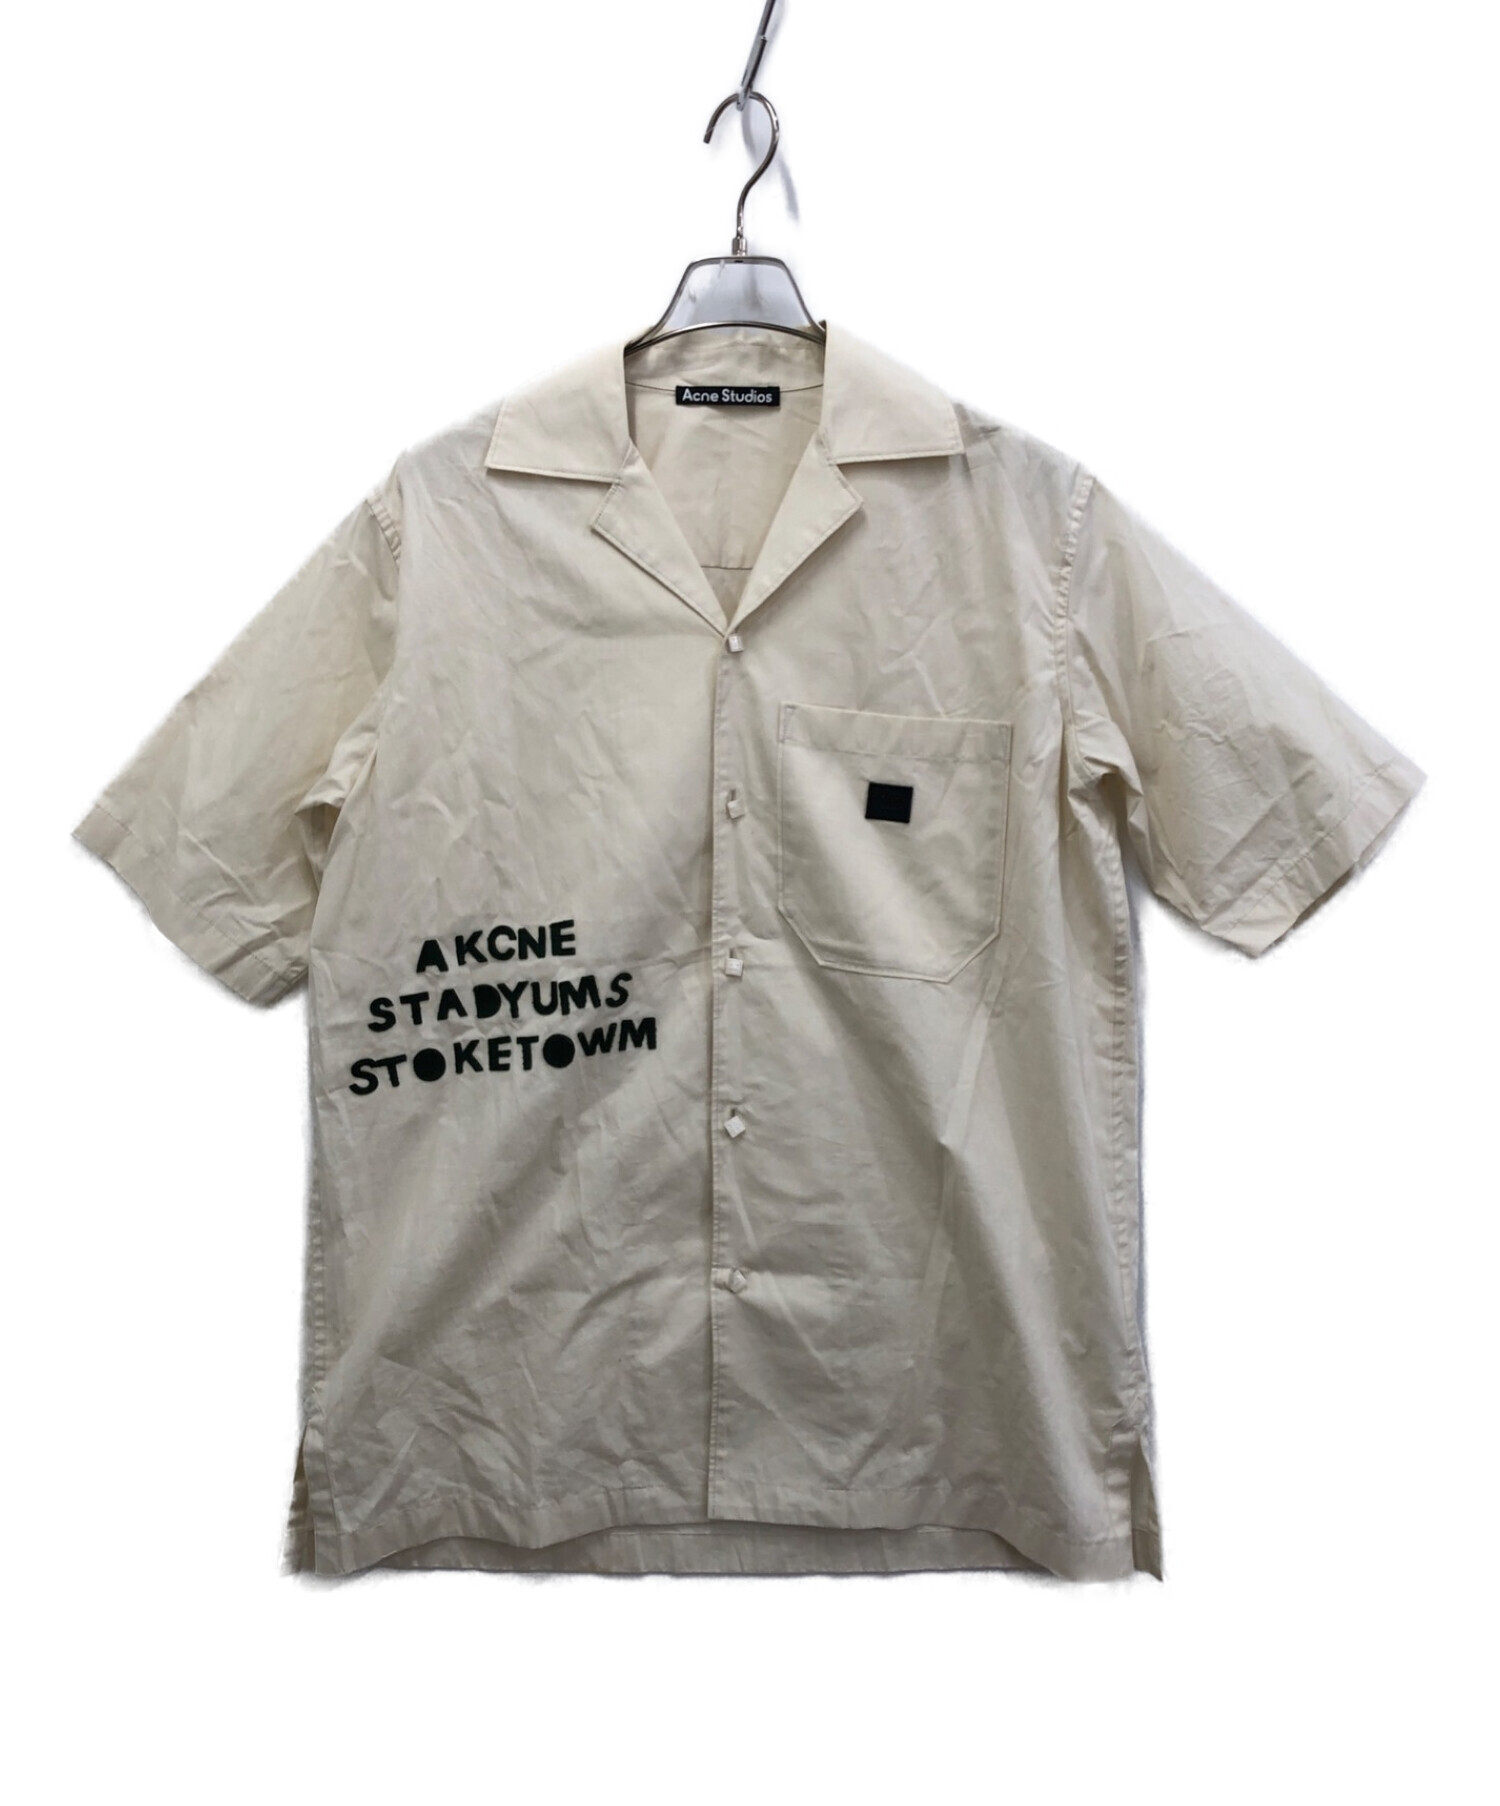 12,375円Acne Studios オープンカラーシャツ